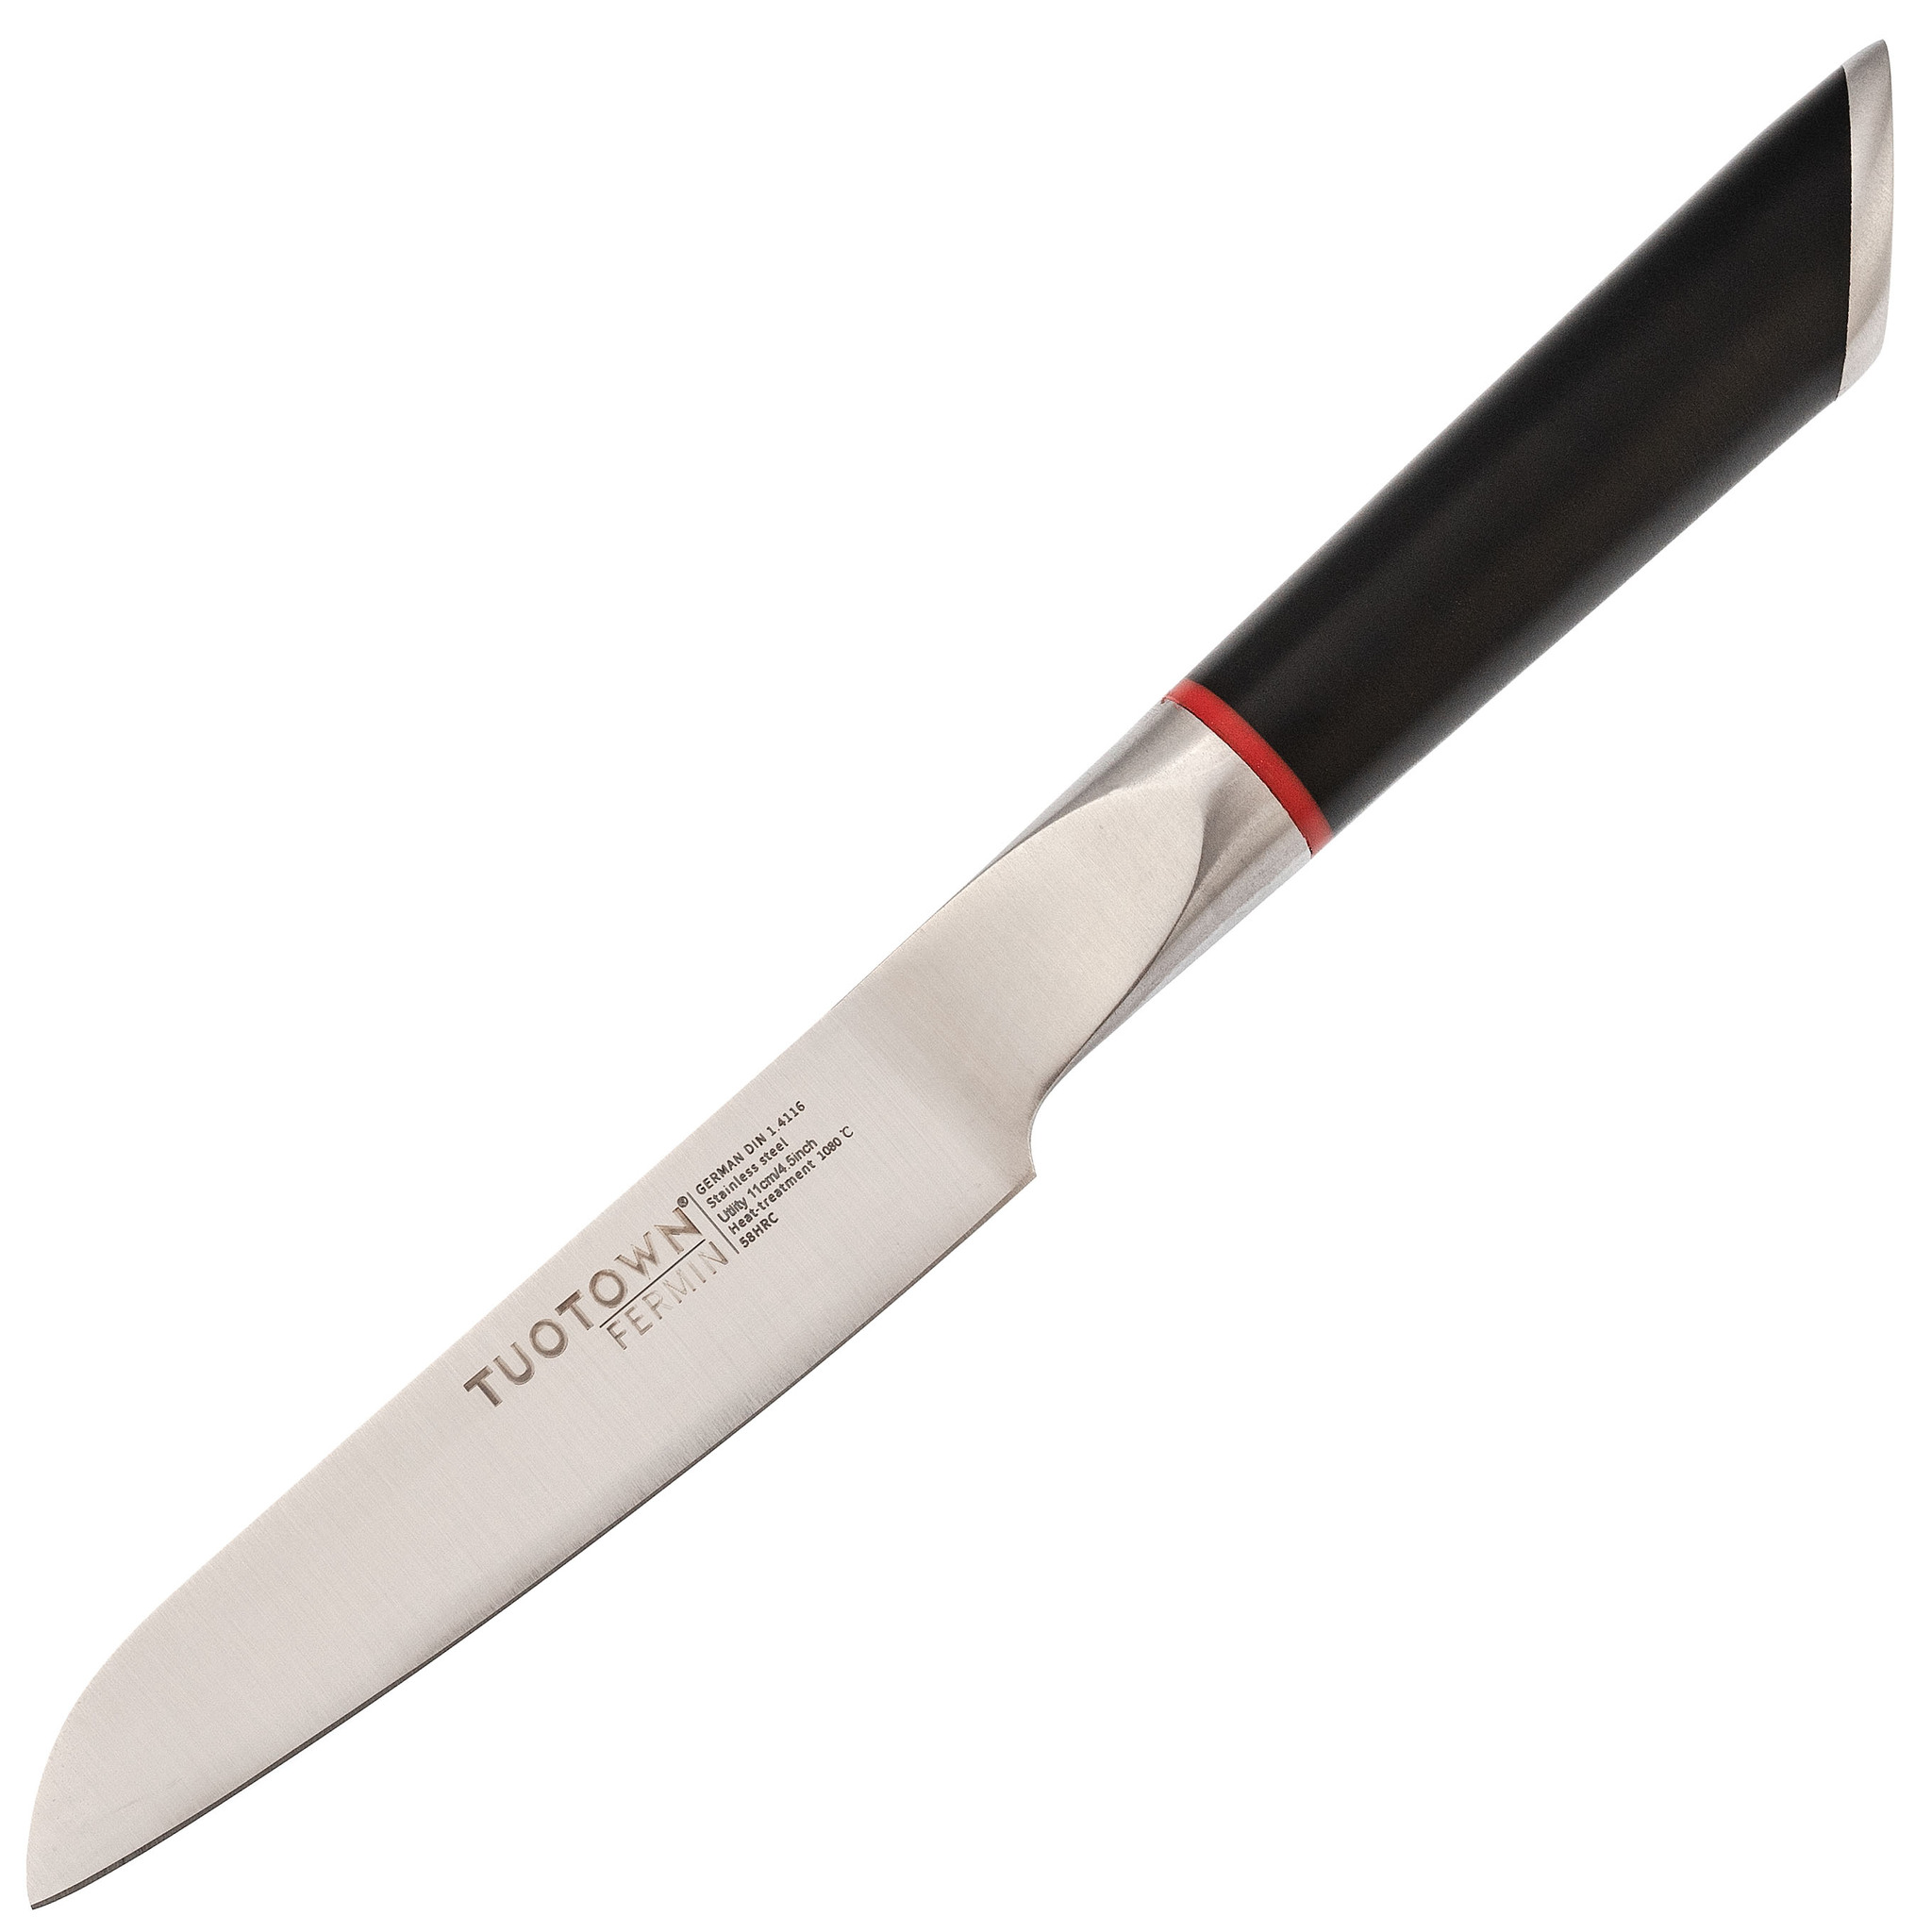 Кухонный нож универсальный, Tuotown серия Fermin, сталь 1.4116, рукоять пластик, Кухонные ножи, Универсальные